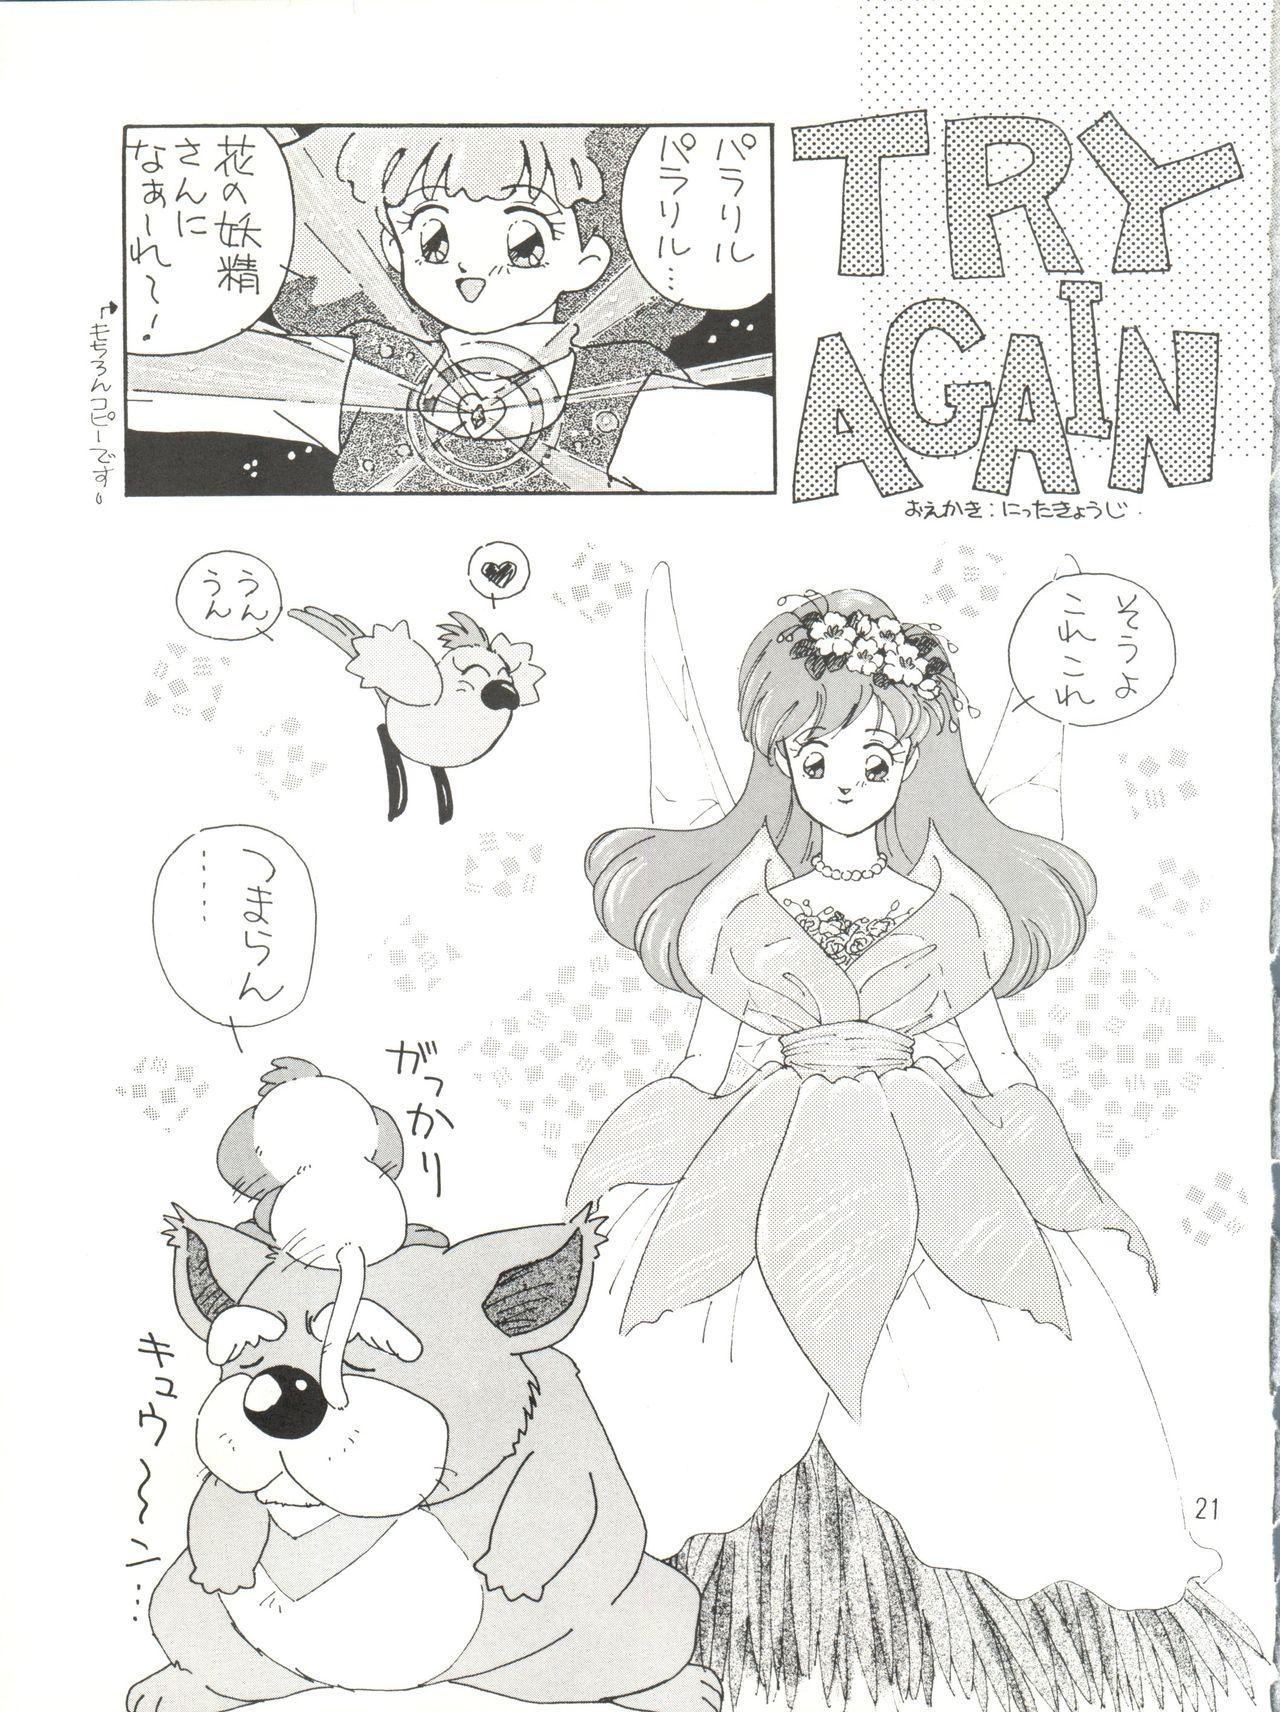 [紫電会 (お梅) MOMO POWER (Mahou no Princess Minky Momo) 20